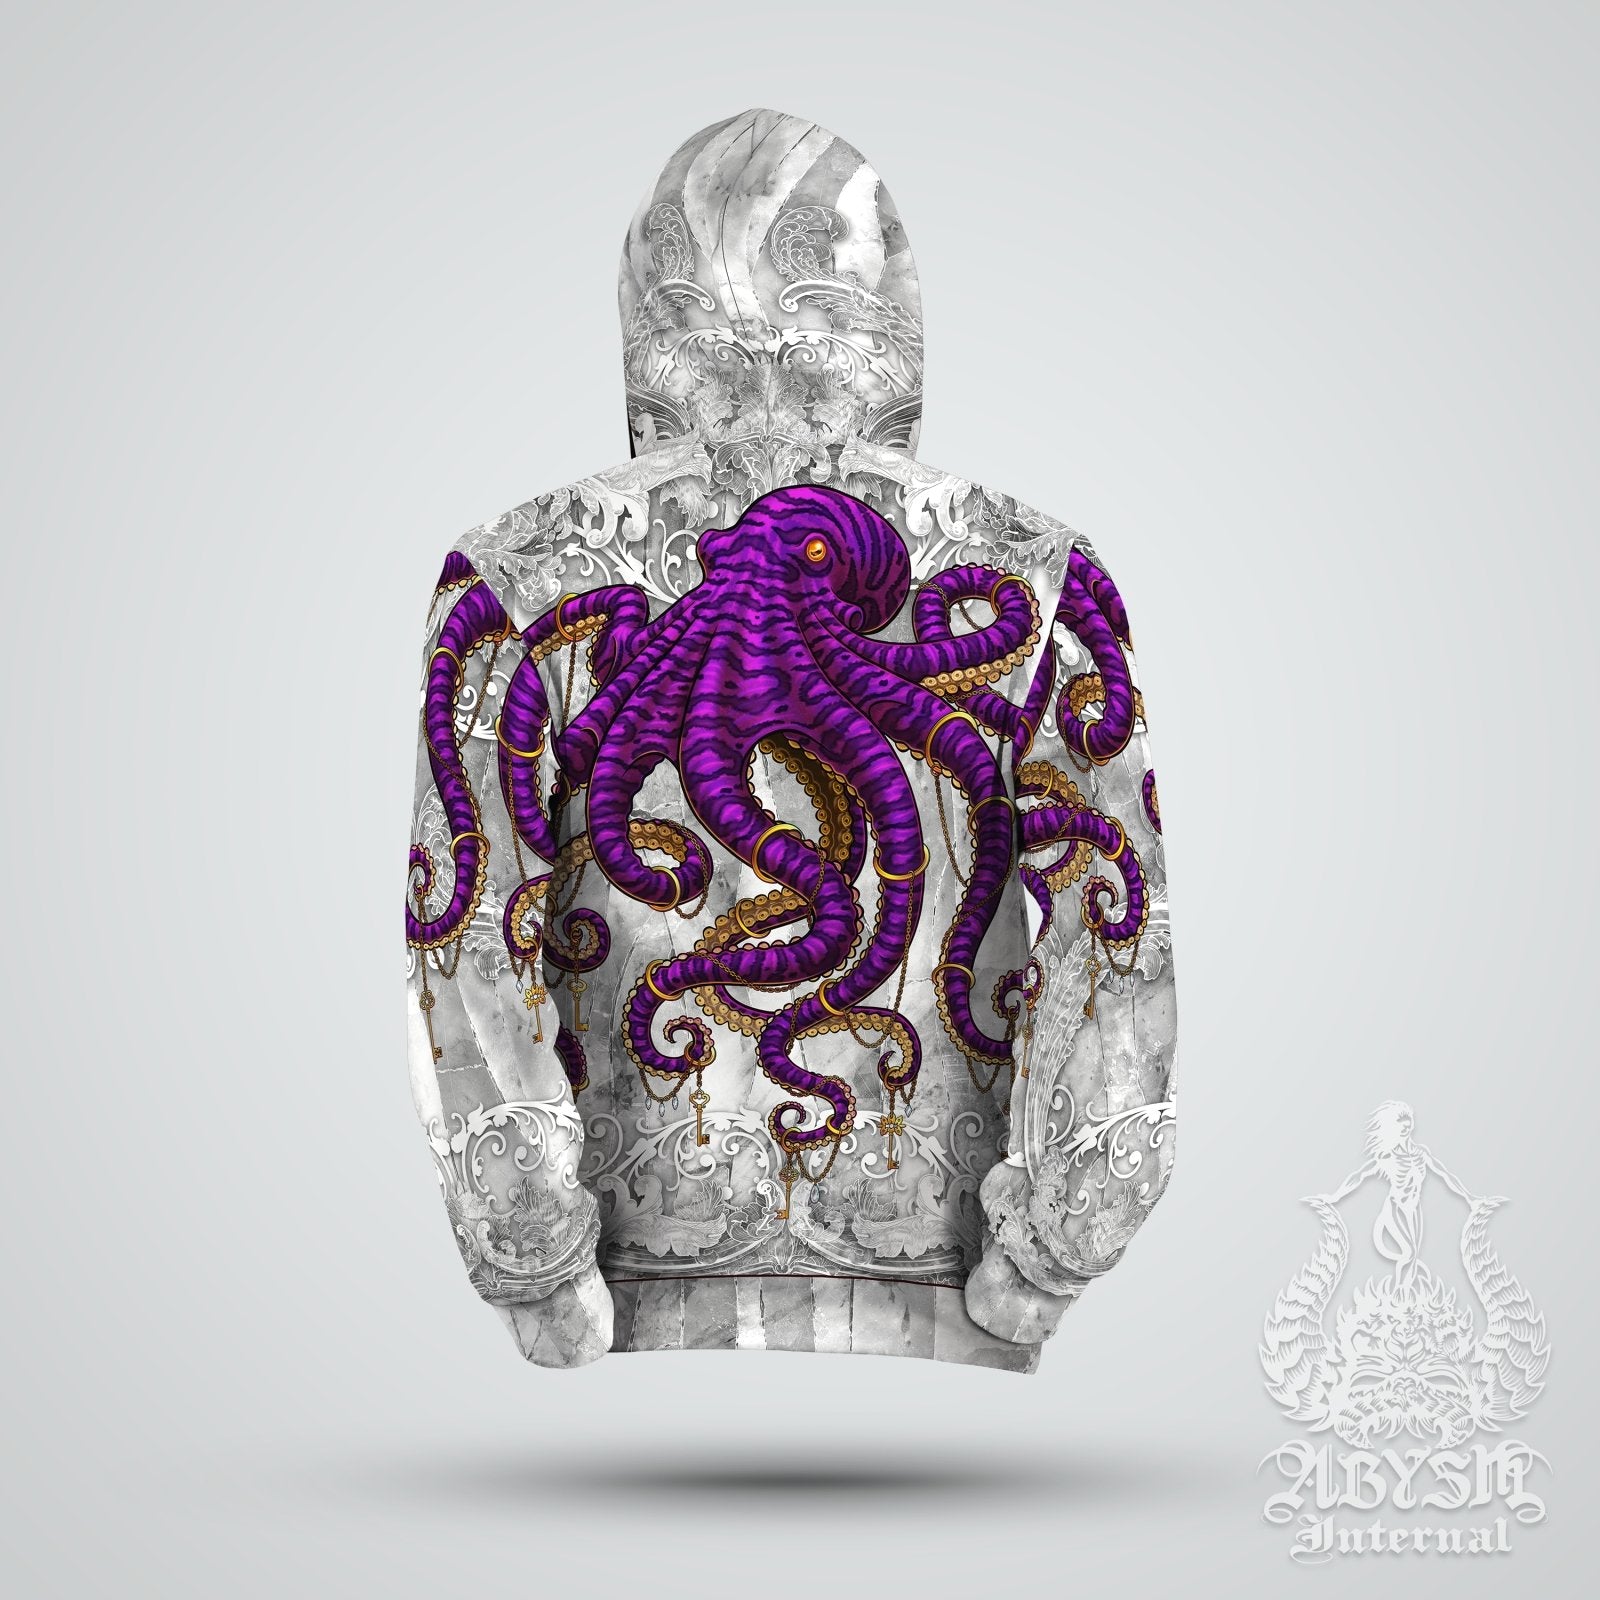 Beach Hoodie, Street Outfit, Indie Streetwear, Alternative Clothing, Unisex - Stone Purple Octopus - Abysm Internal